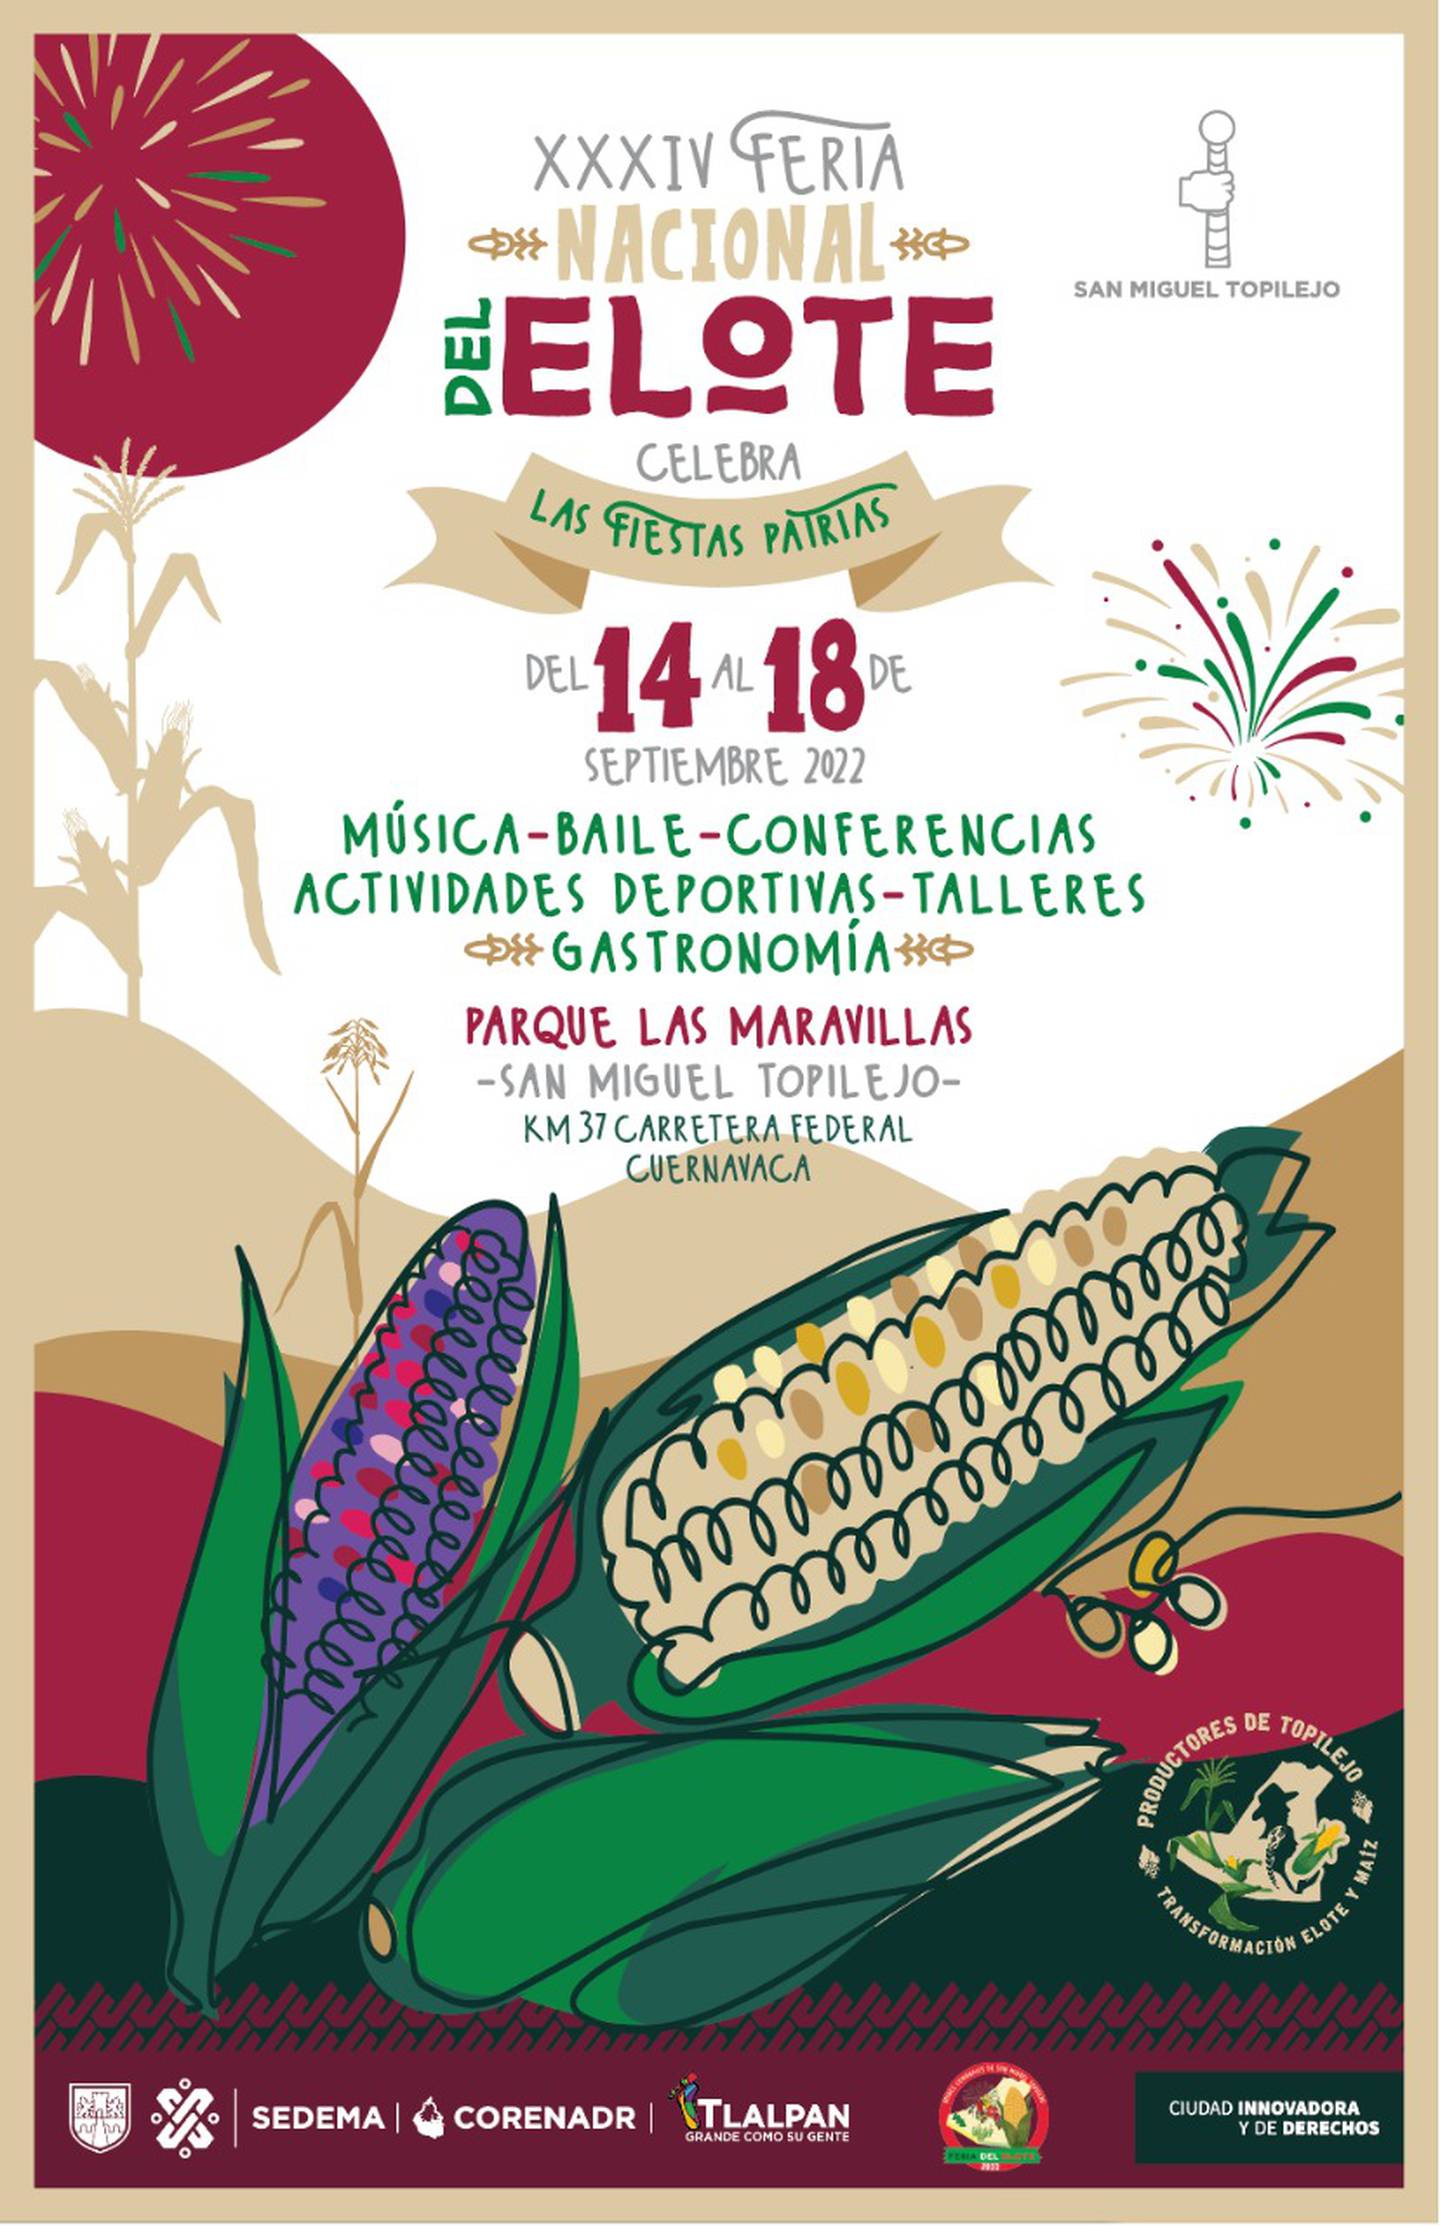 ¡Viva el maíz! Llega la Feria Nacional del Elote 2022 a la CDMX El